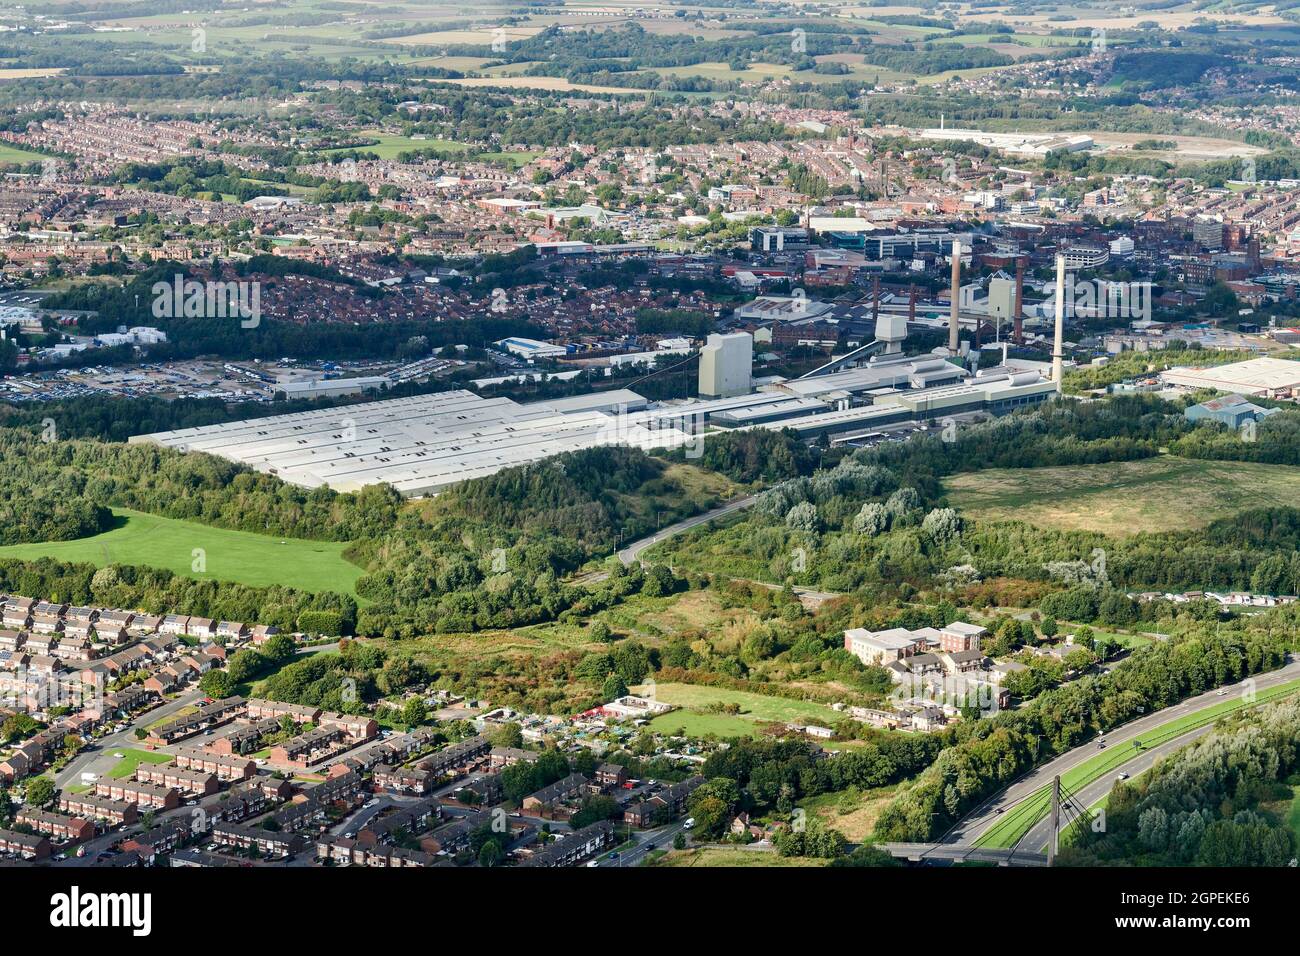 Une vue aérienne de Pilkington Glass Works, St Helens, nord-ouest de l'Angleterre, Royaume-Uni Banque D'Images